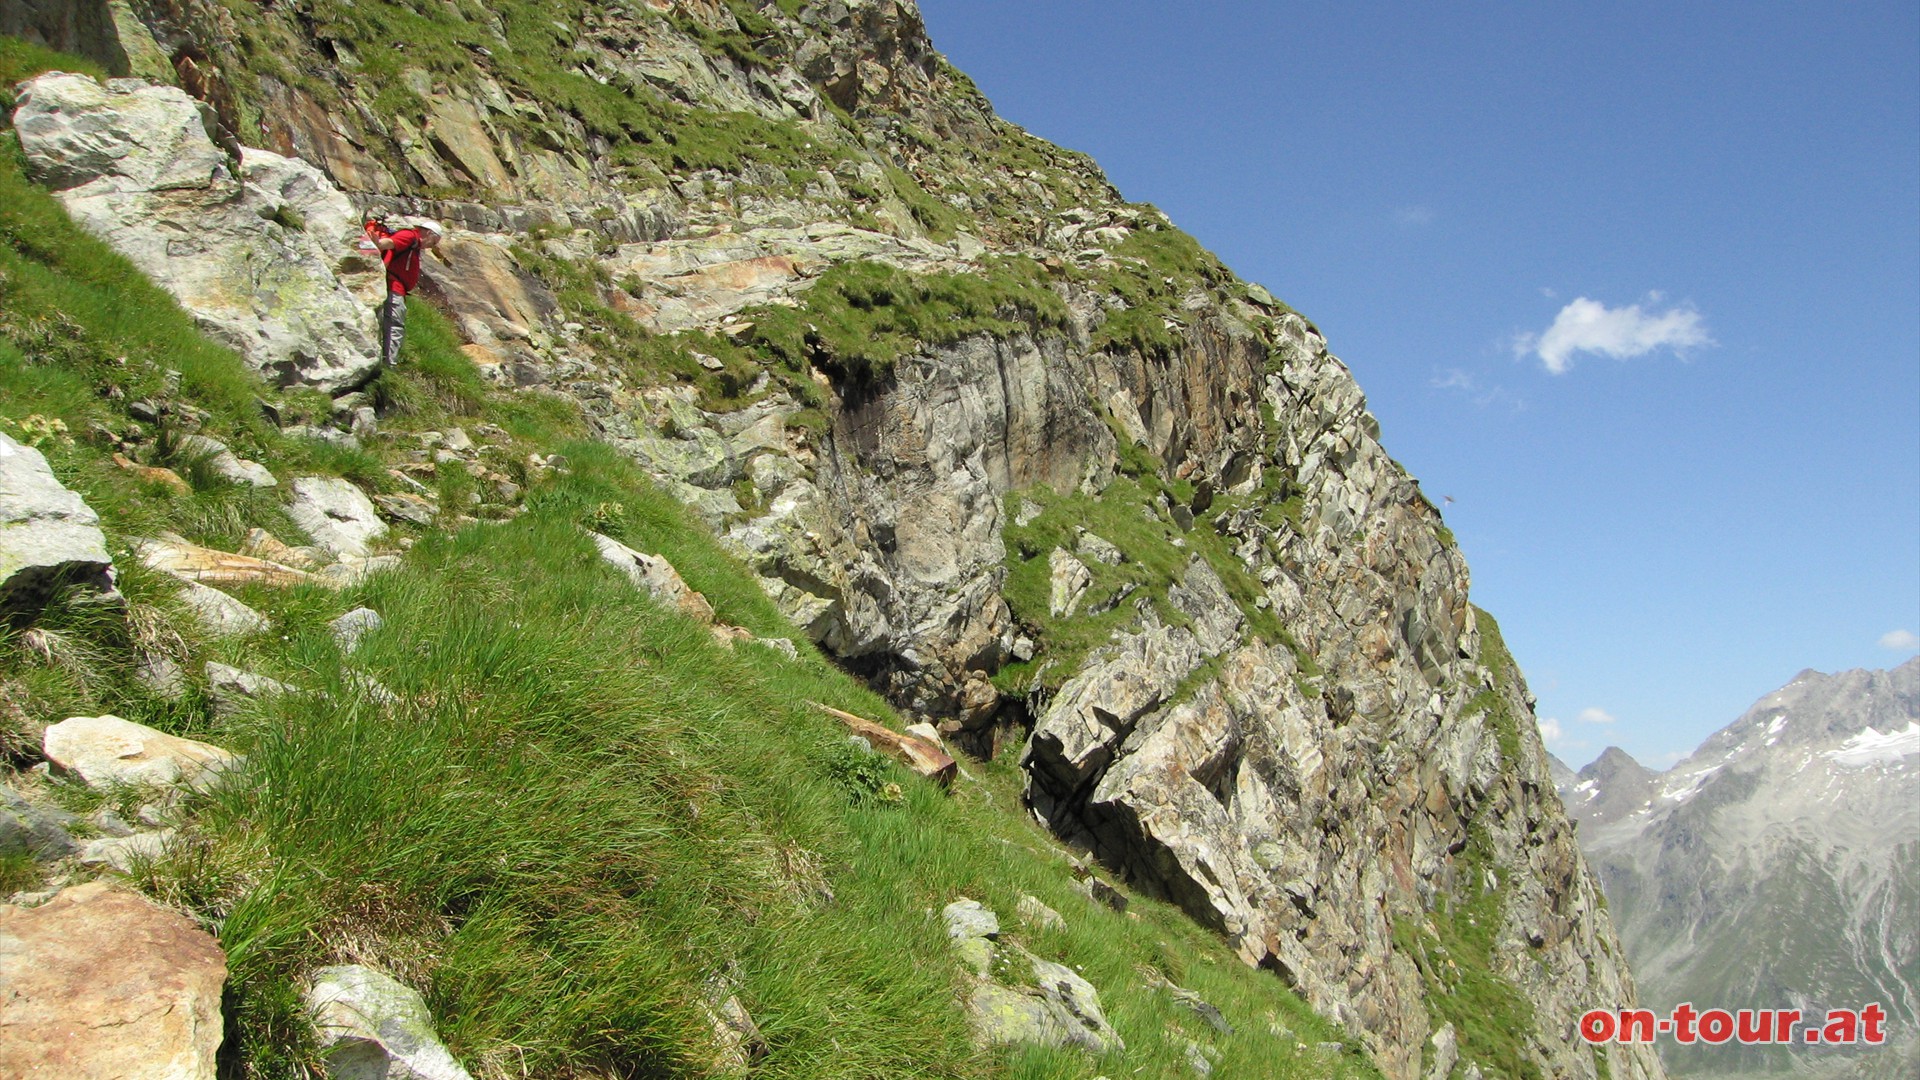 Eine kurze Passage durch die Grat-Steilwand gilt es noch zu berwinden.